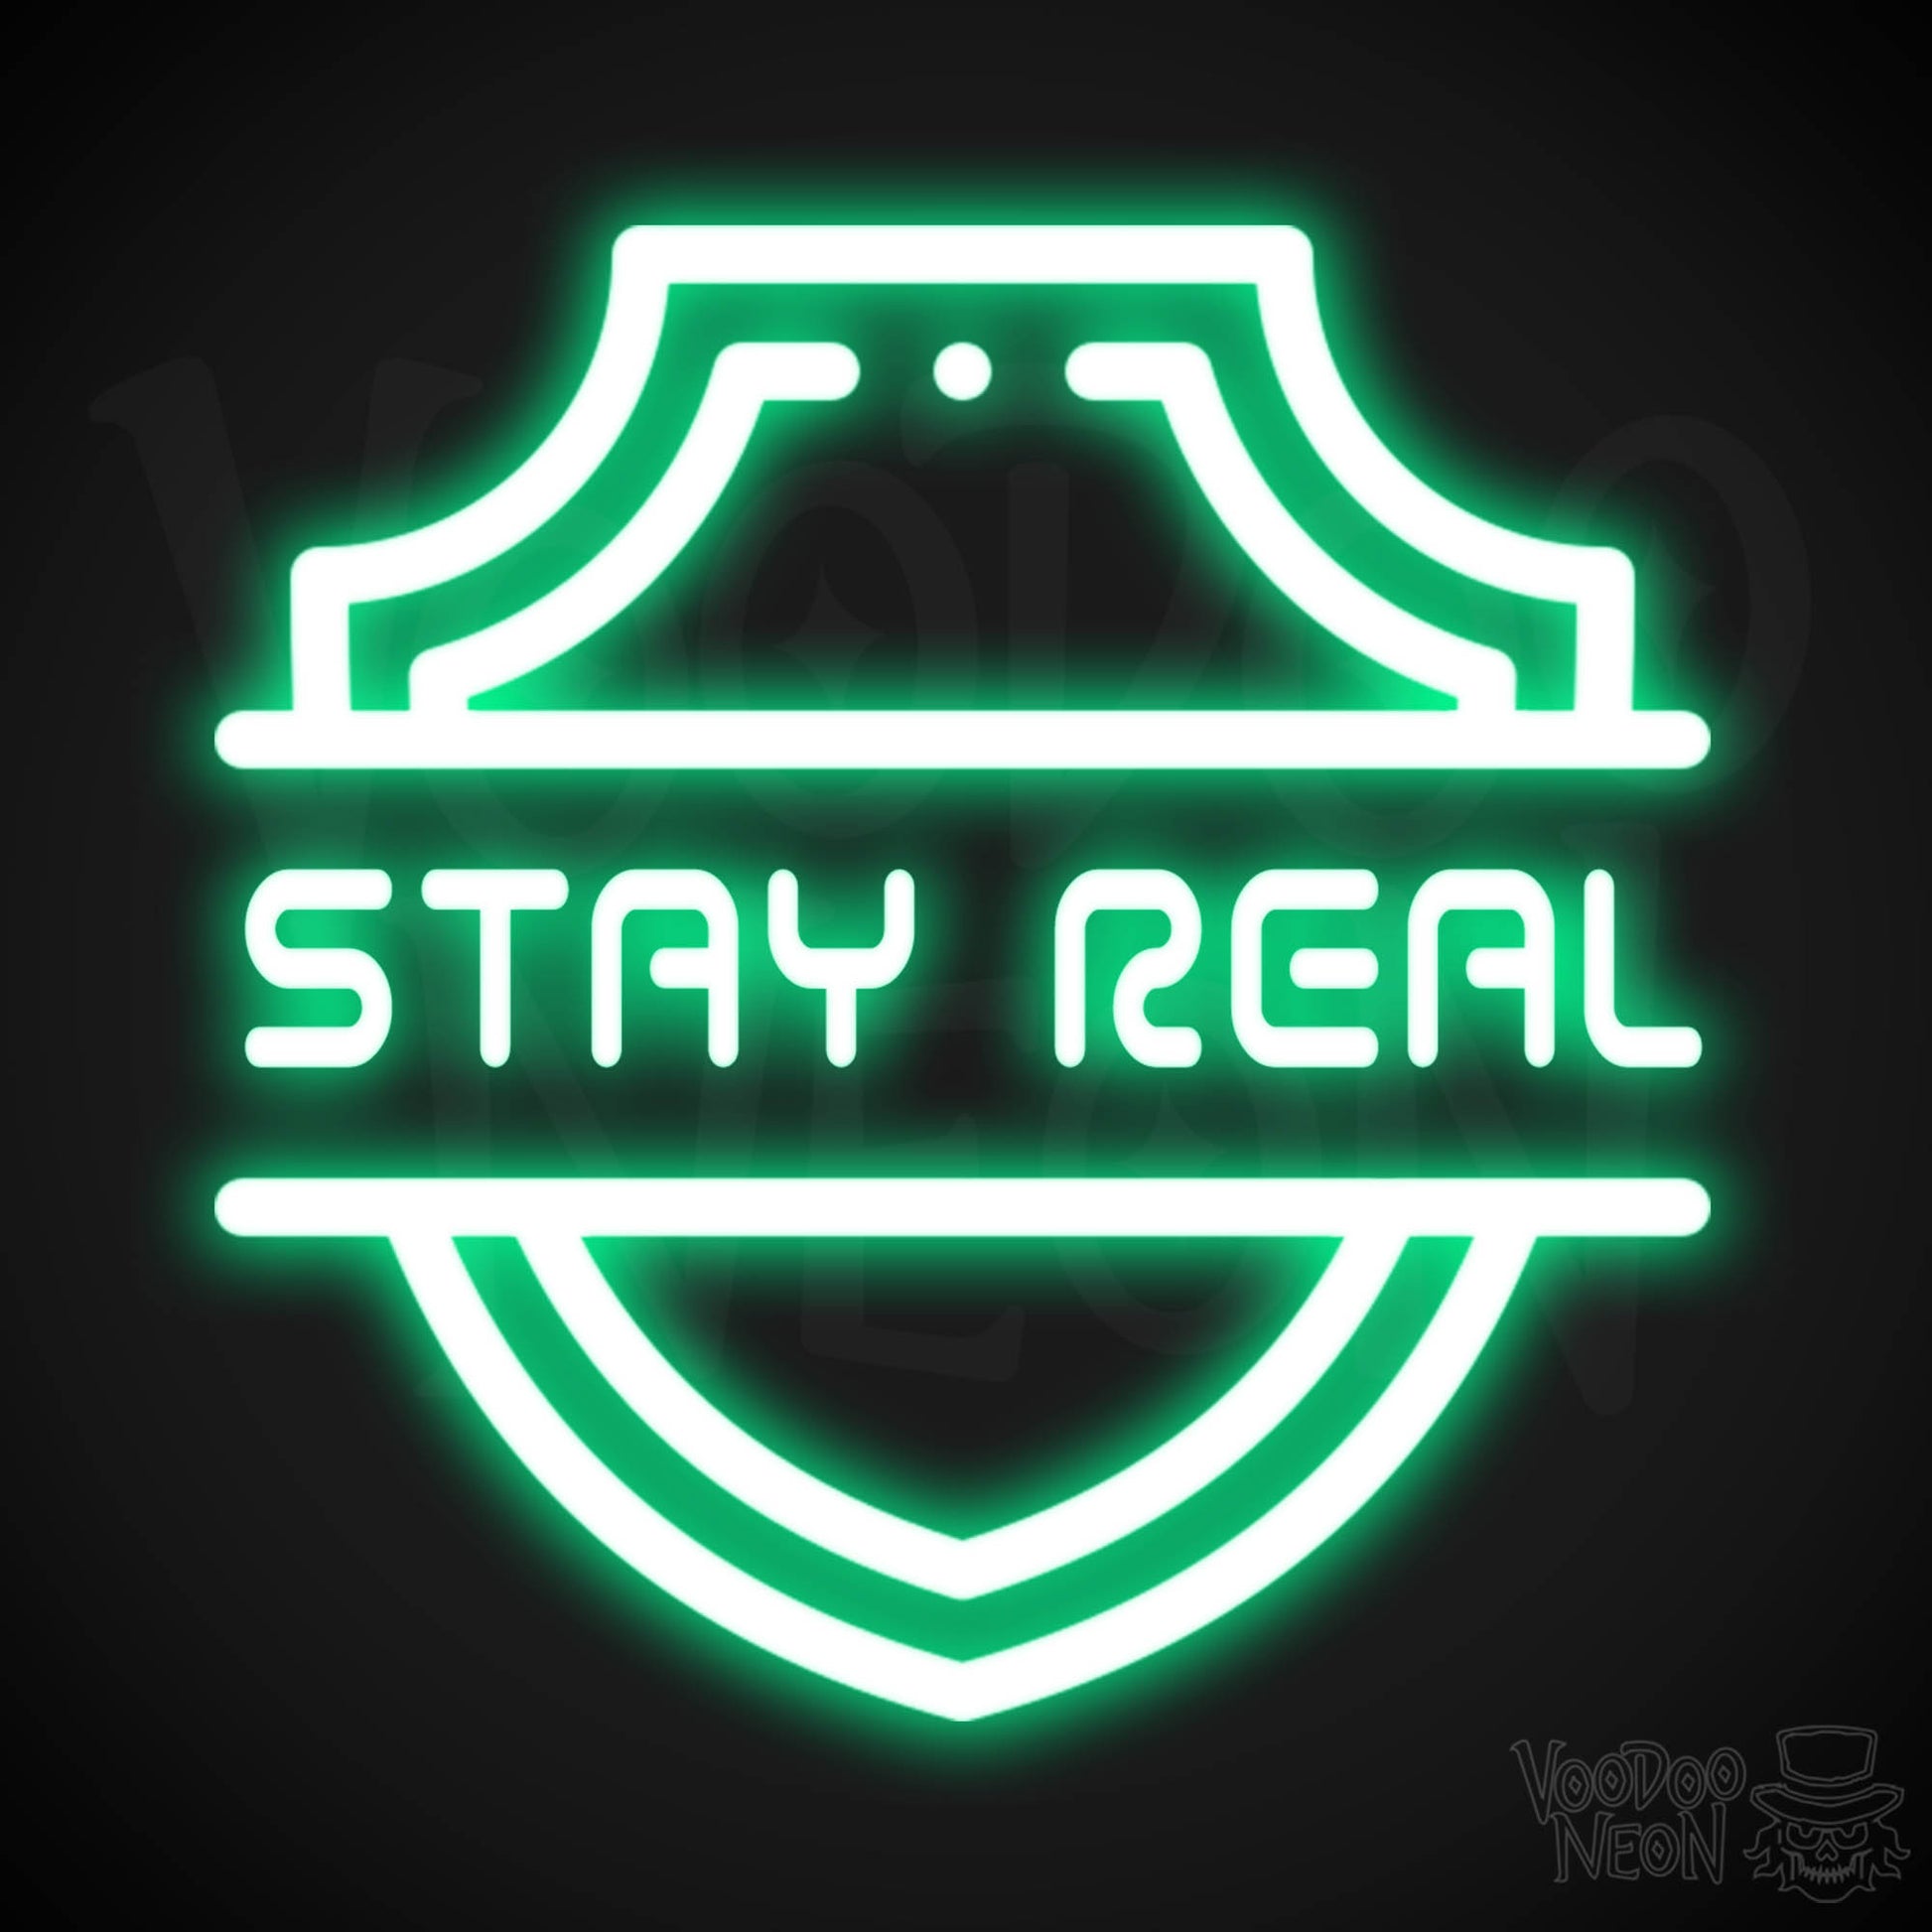 Stay Real Neon Sign - Neon Stay Real Sign - Neon Wall Art - Color Green